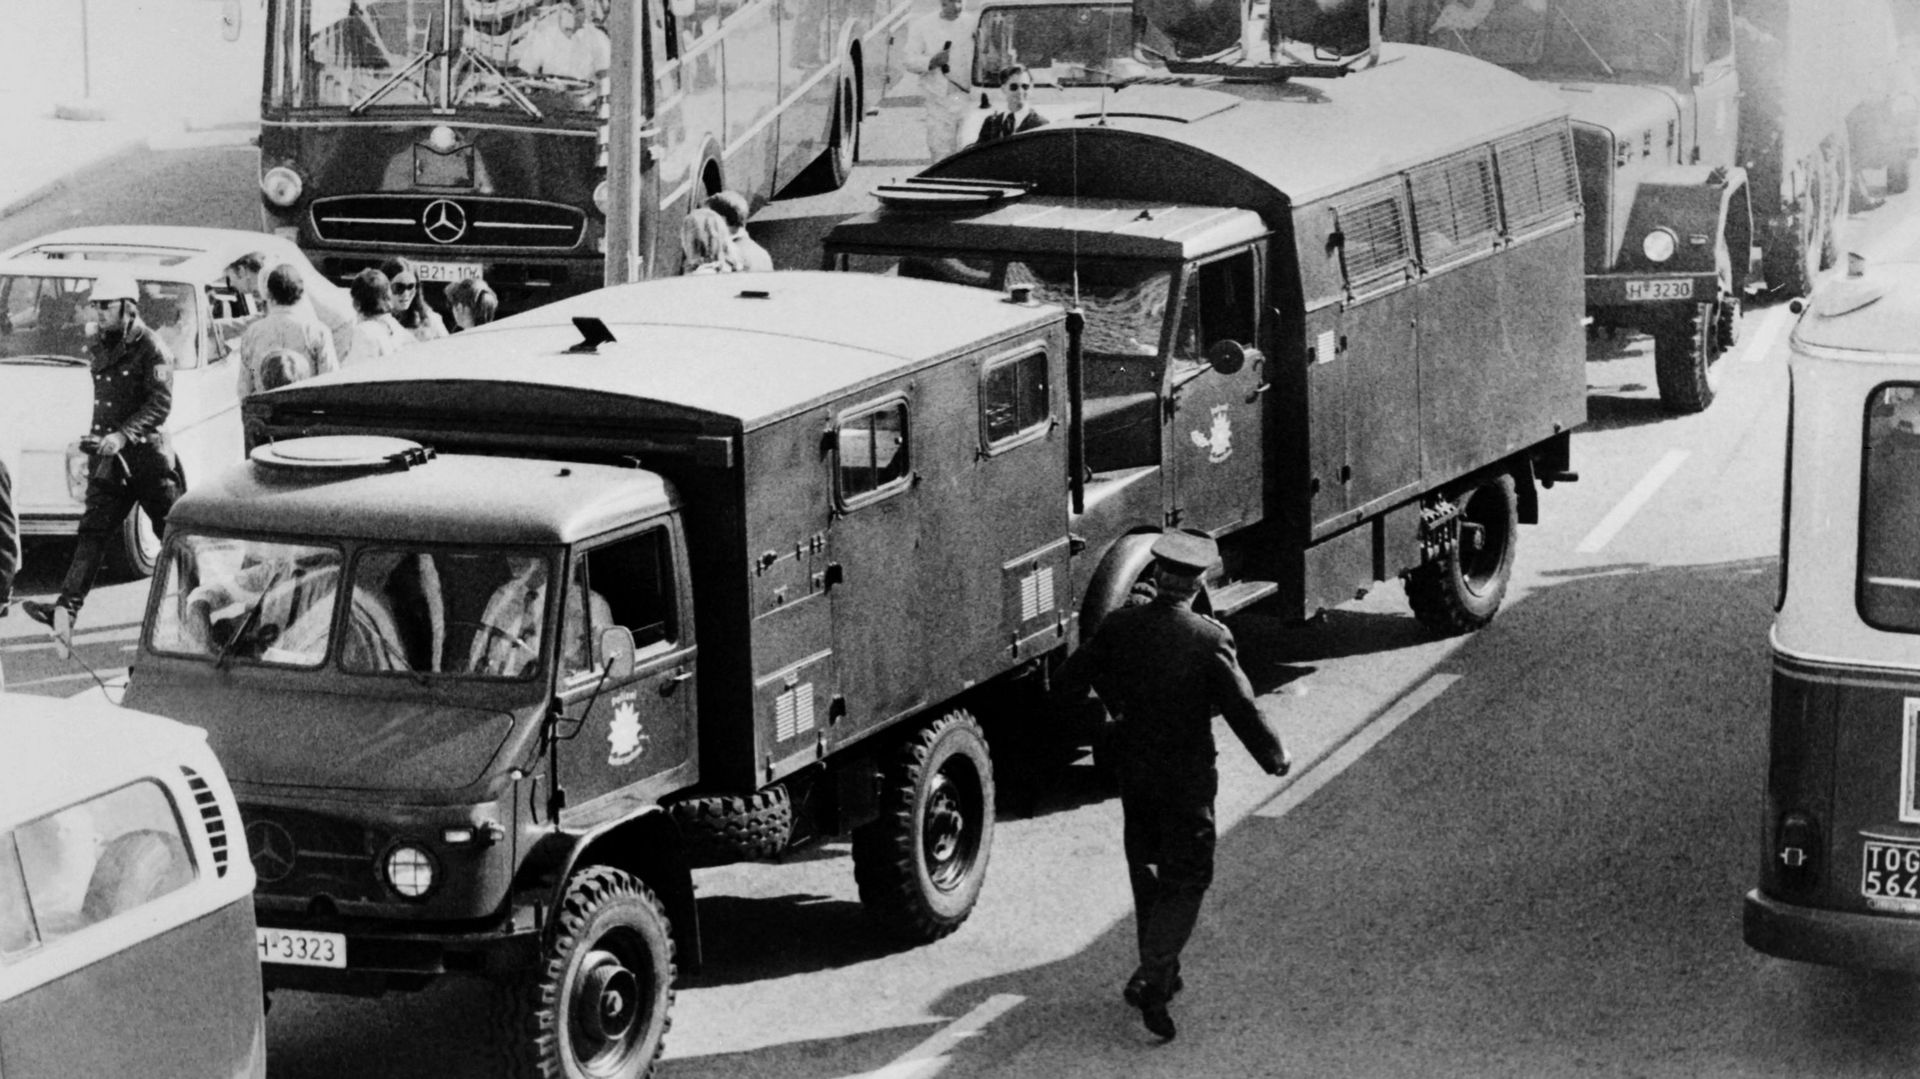 De nombreux véhicules blindés arrivent dans le village olympique, le 5 septembre 1972 à Munich, après que des terroristes palestiniens du groupe "Septembre noir" ont pris d'assaut les quartiers des athlètes israéliens